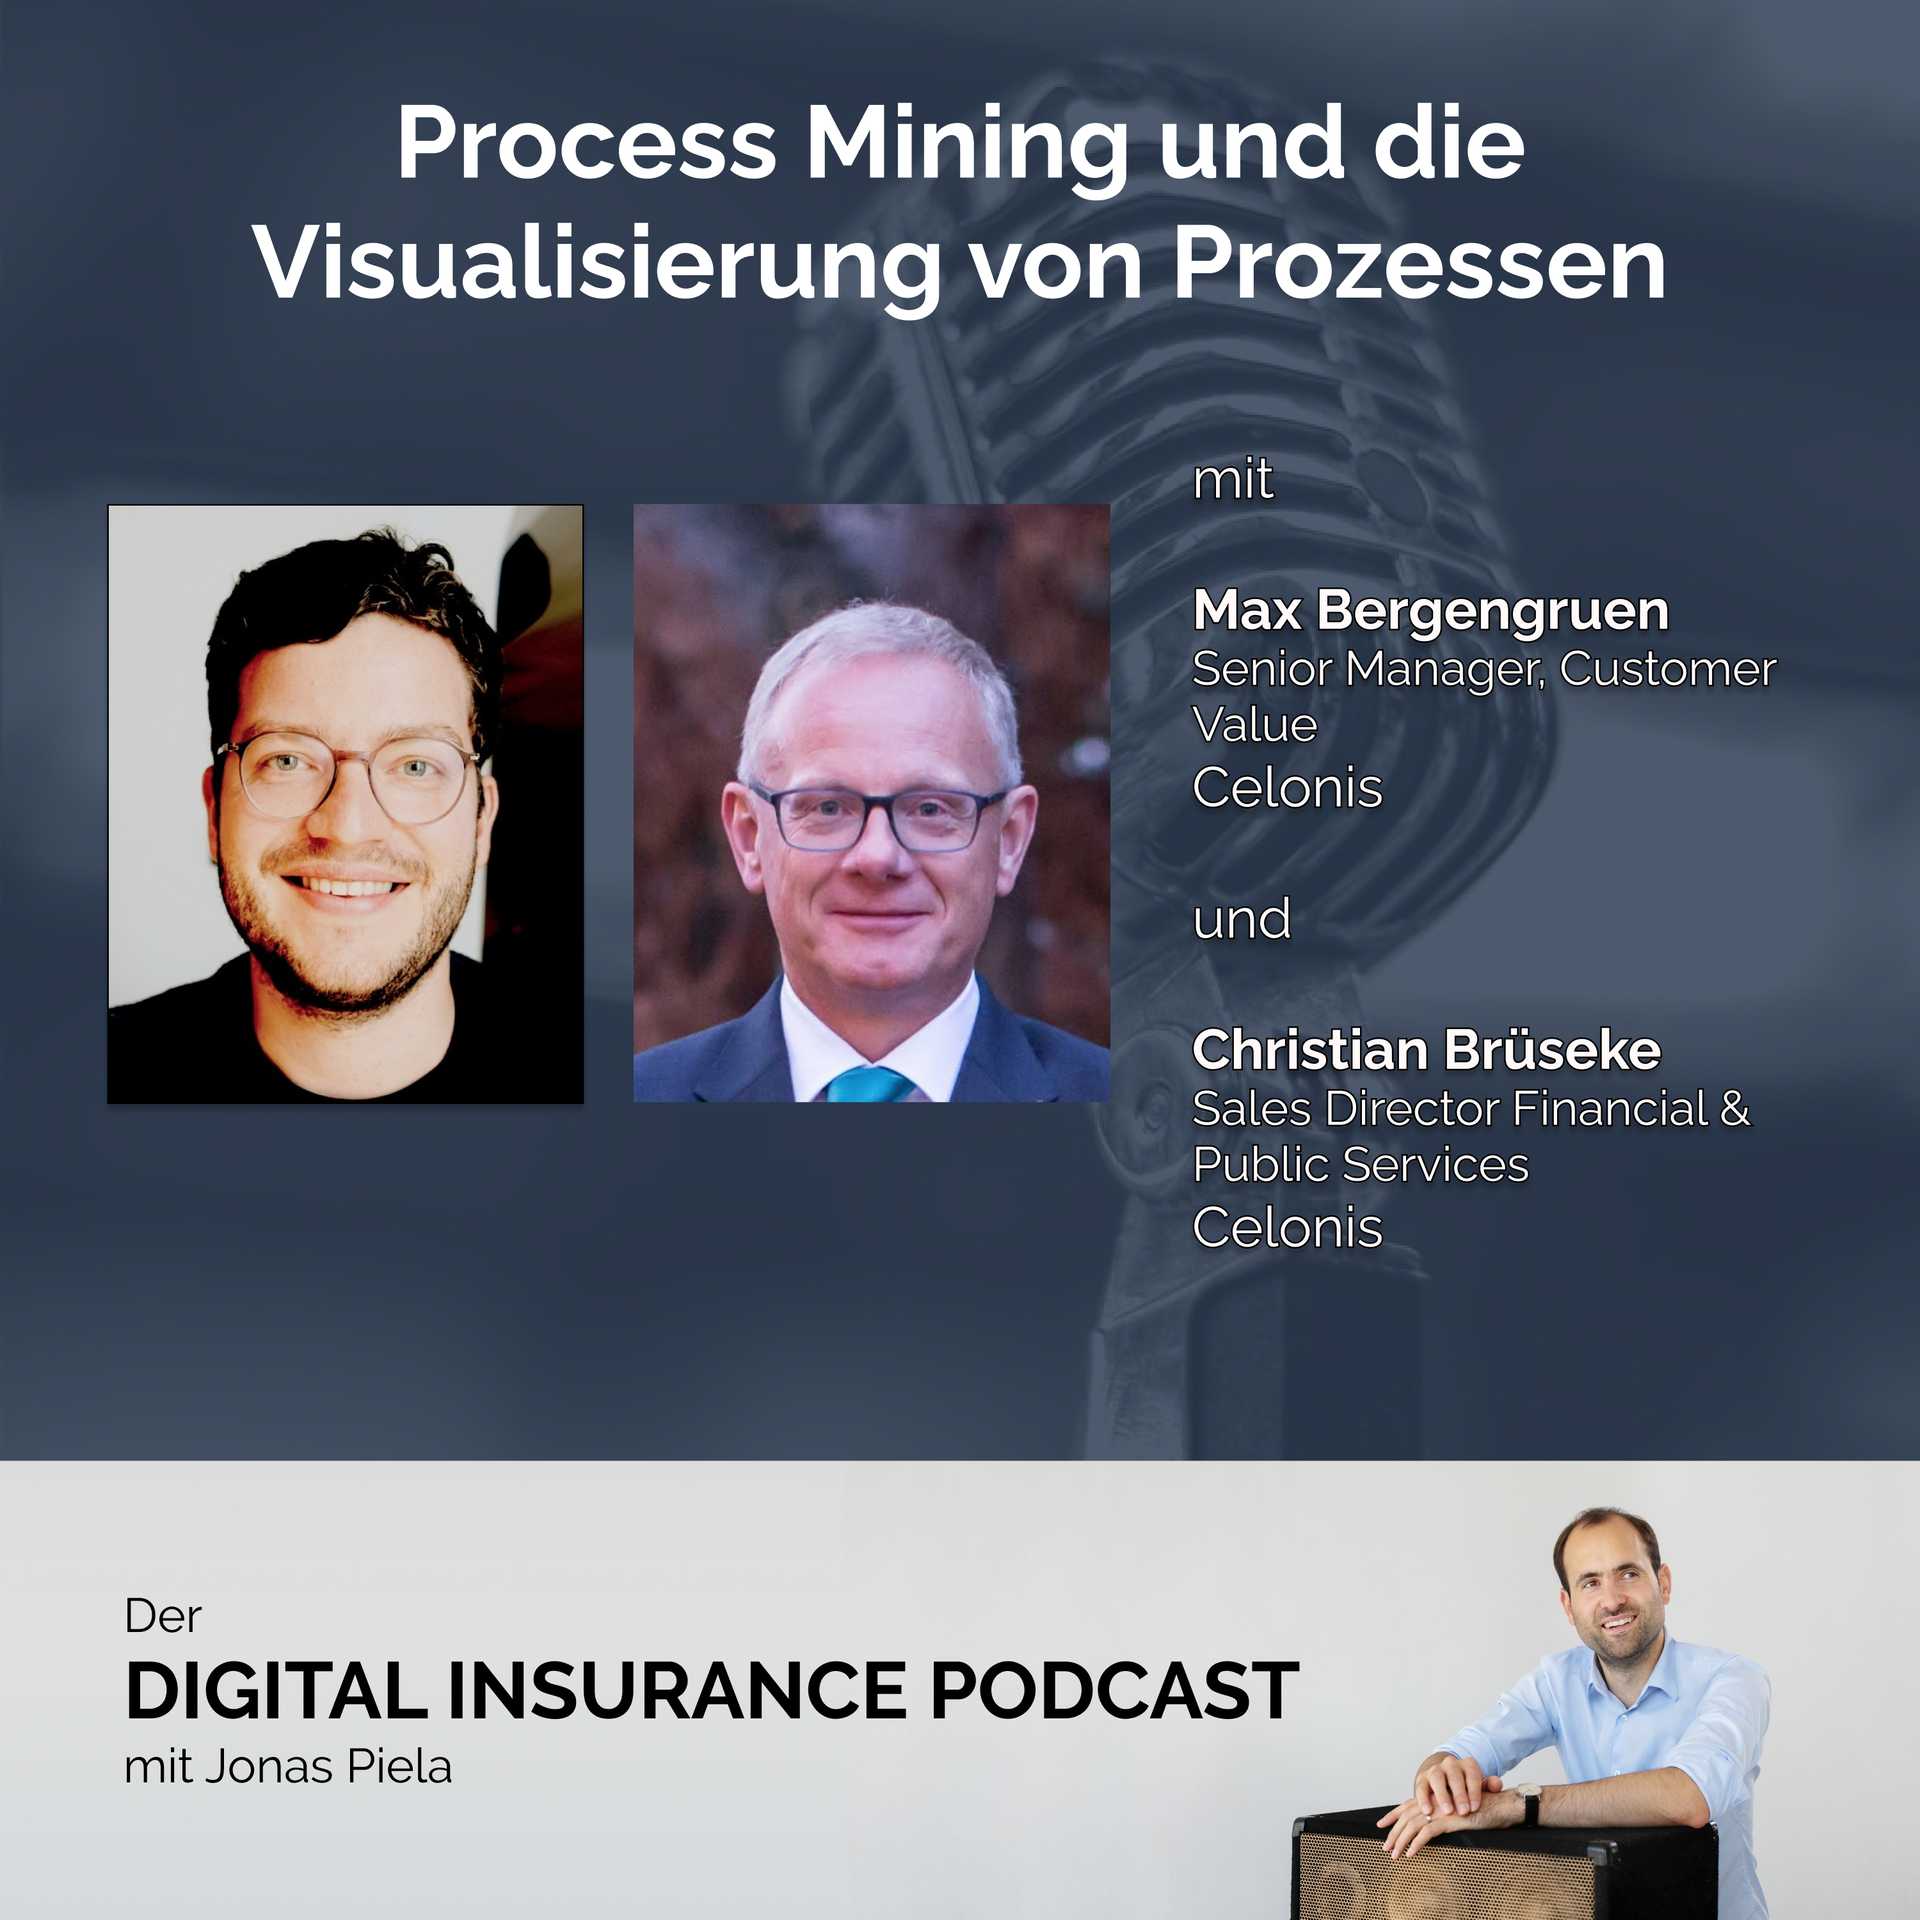 Process Mining und die Visualisierung von Prozessen mit Max Bergengruen und Christian Brüseke